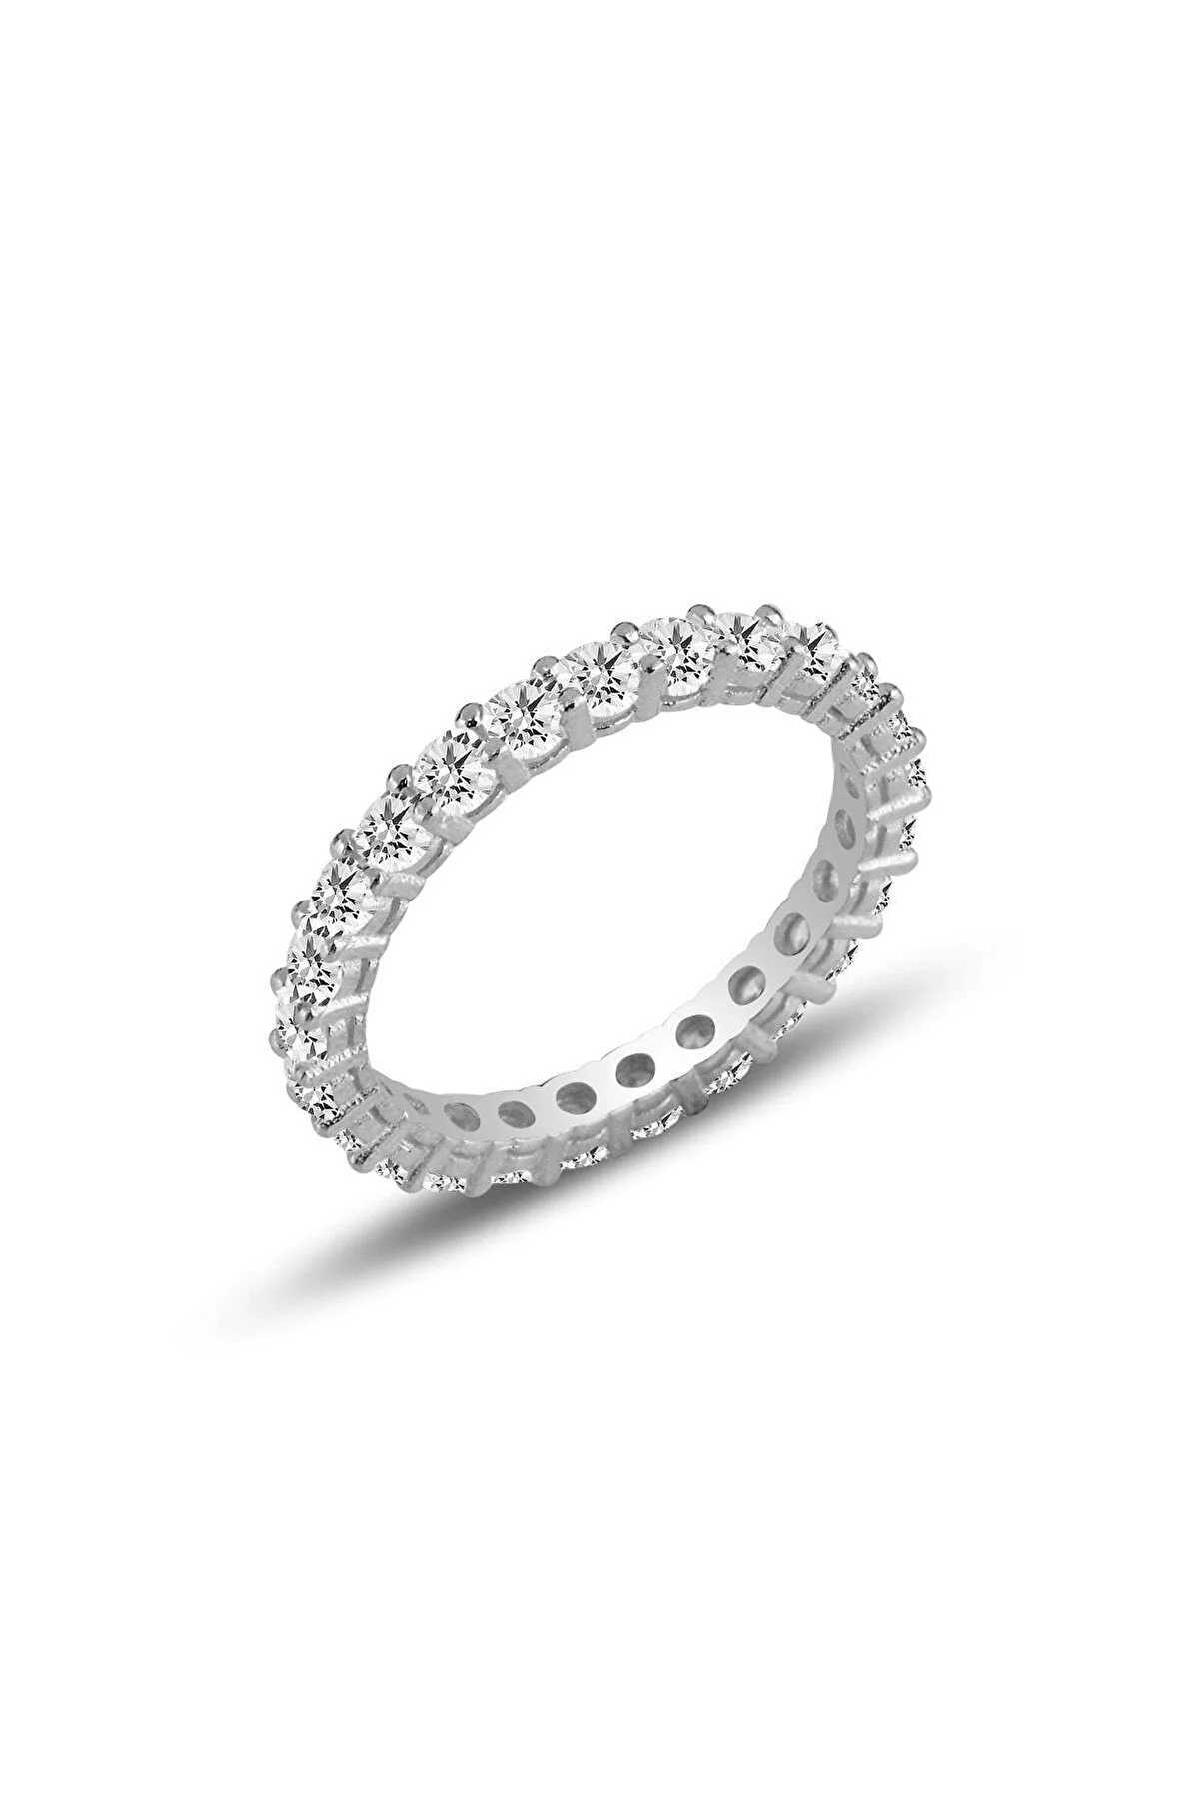 انگشتر زنانه مدل الماس Söğütlü Silver کد.1030